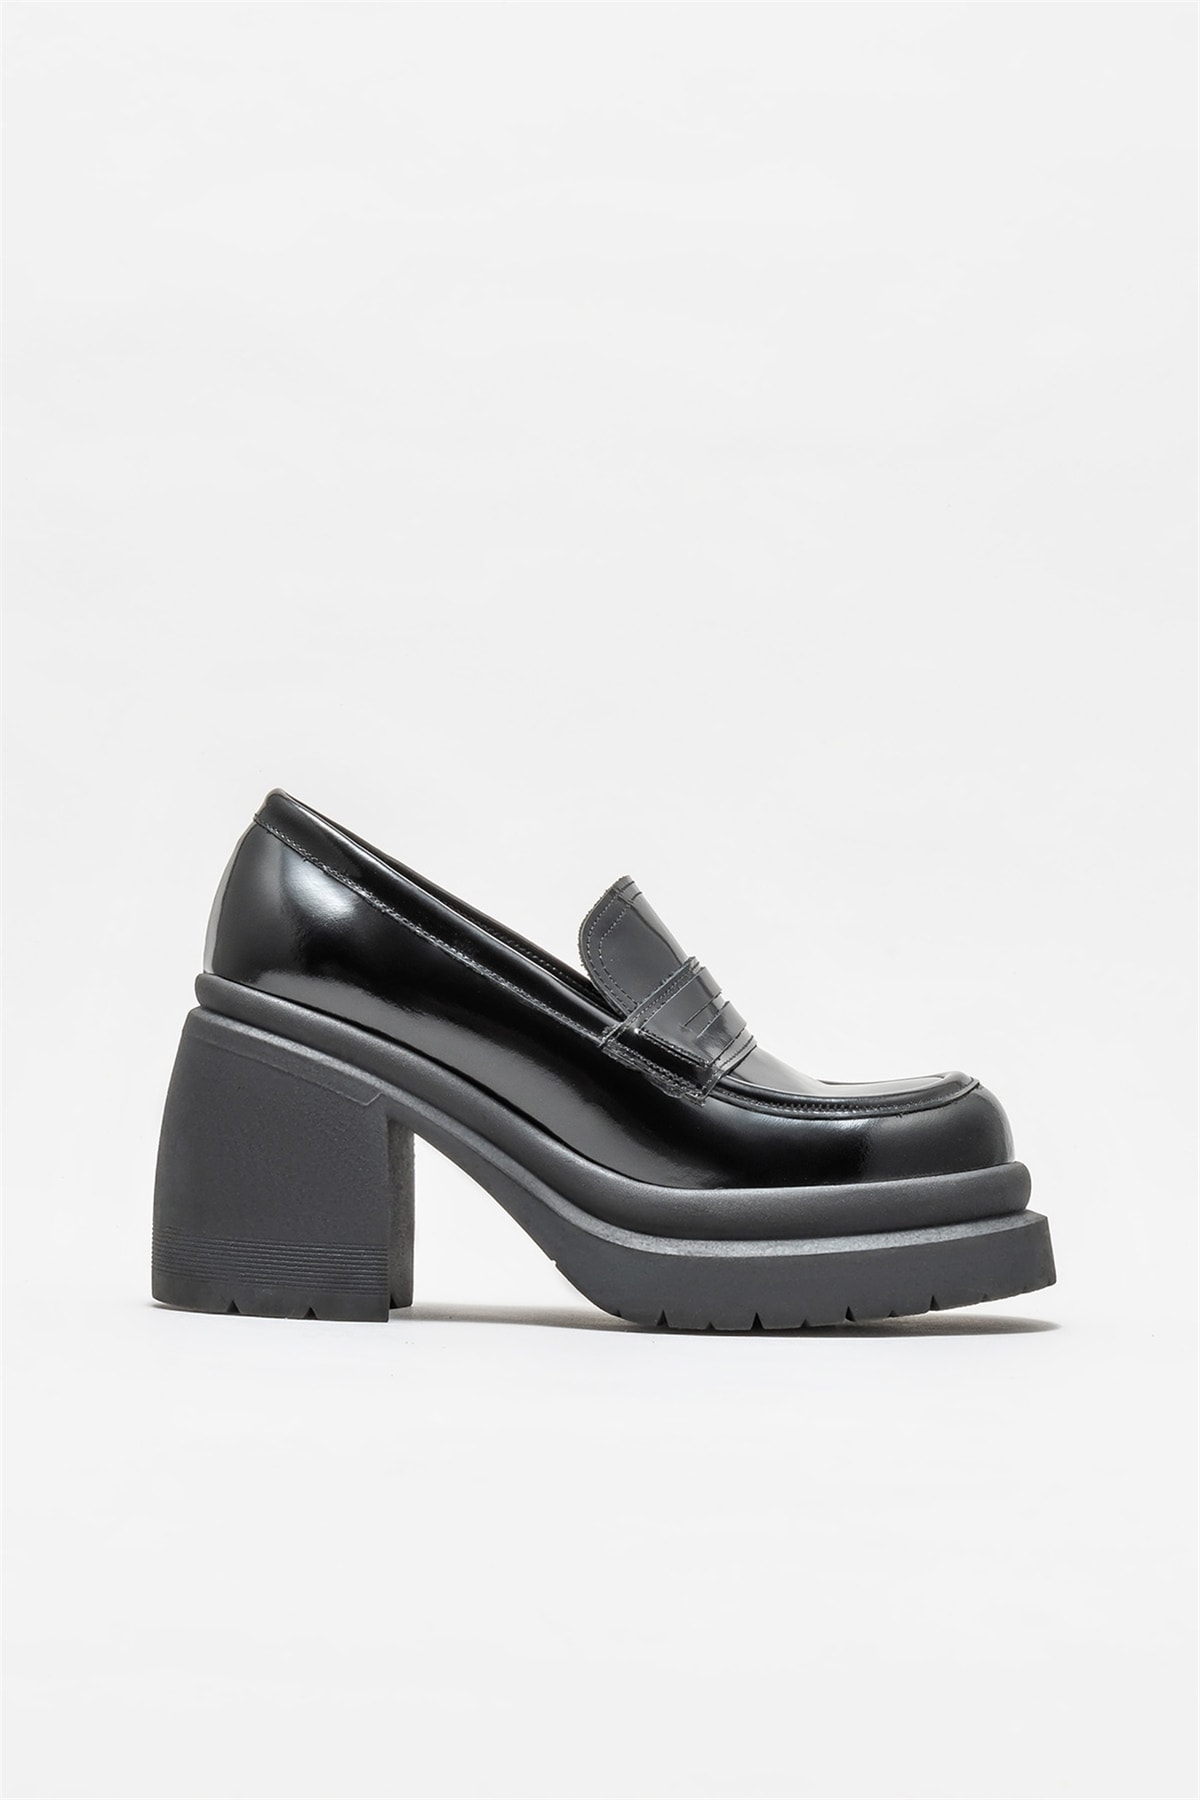 Levně Elle Shoes Black Leather Women's Heeled Shoes